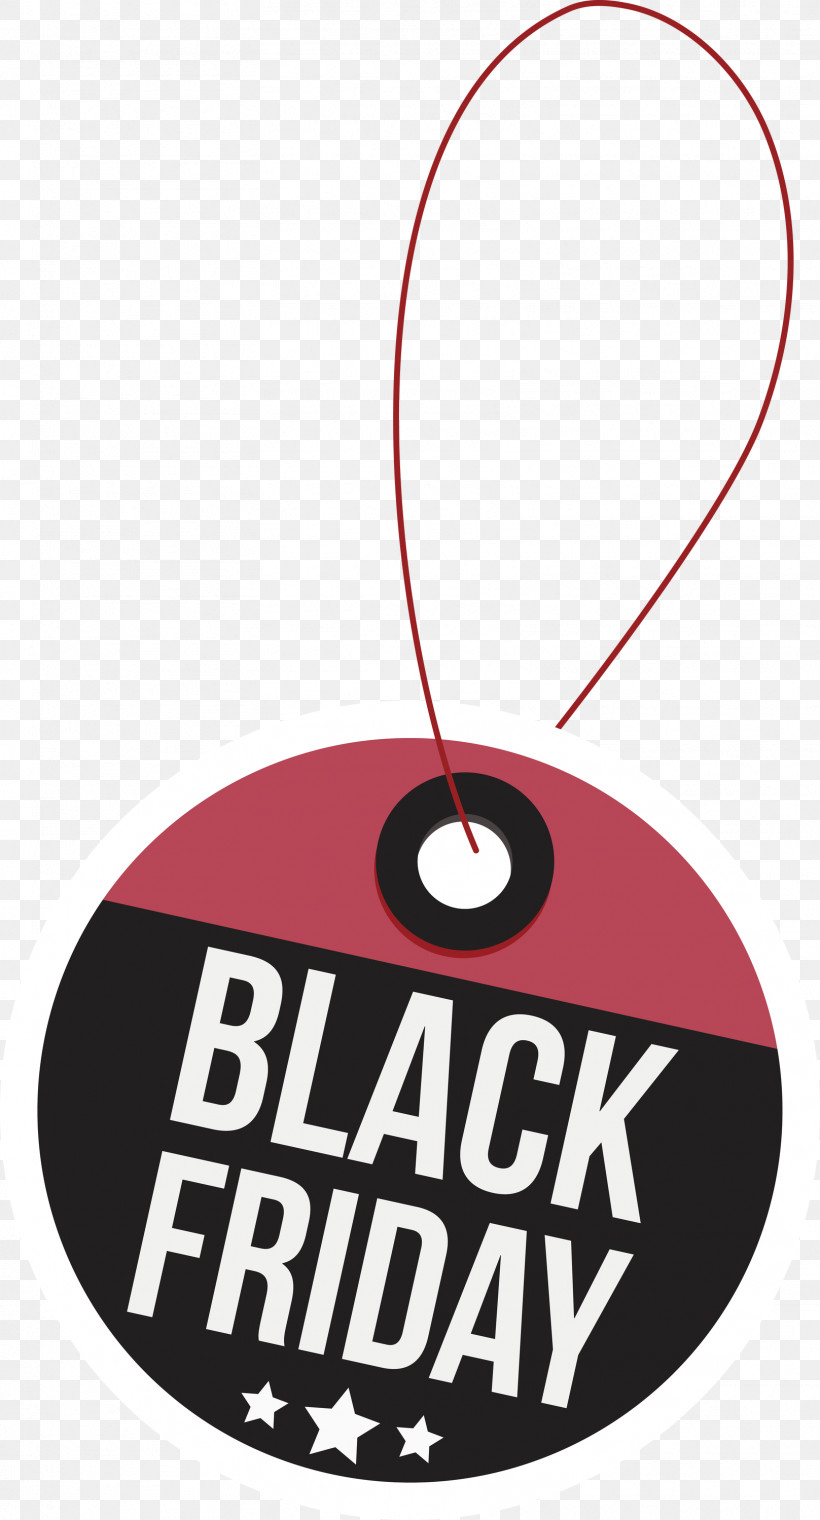 Black Friday Black Friday Discount Black Friday Sale, PNG, 1617x2999px, Black Friday, Black Friday Discount, Black Friday Sale, Circle 7 Logo, Logo Download Free